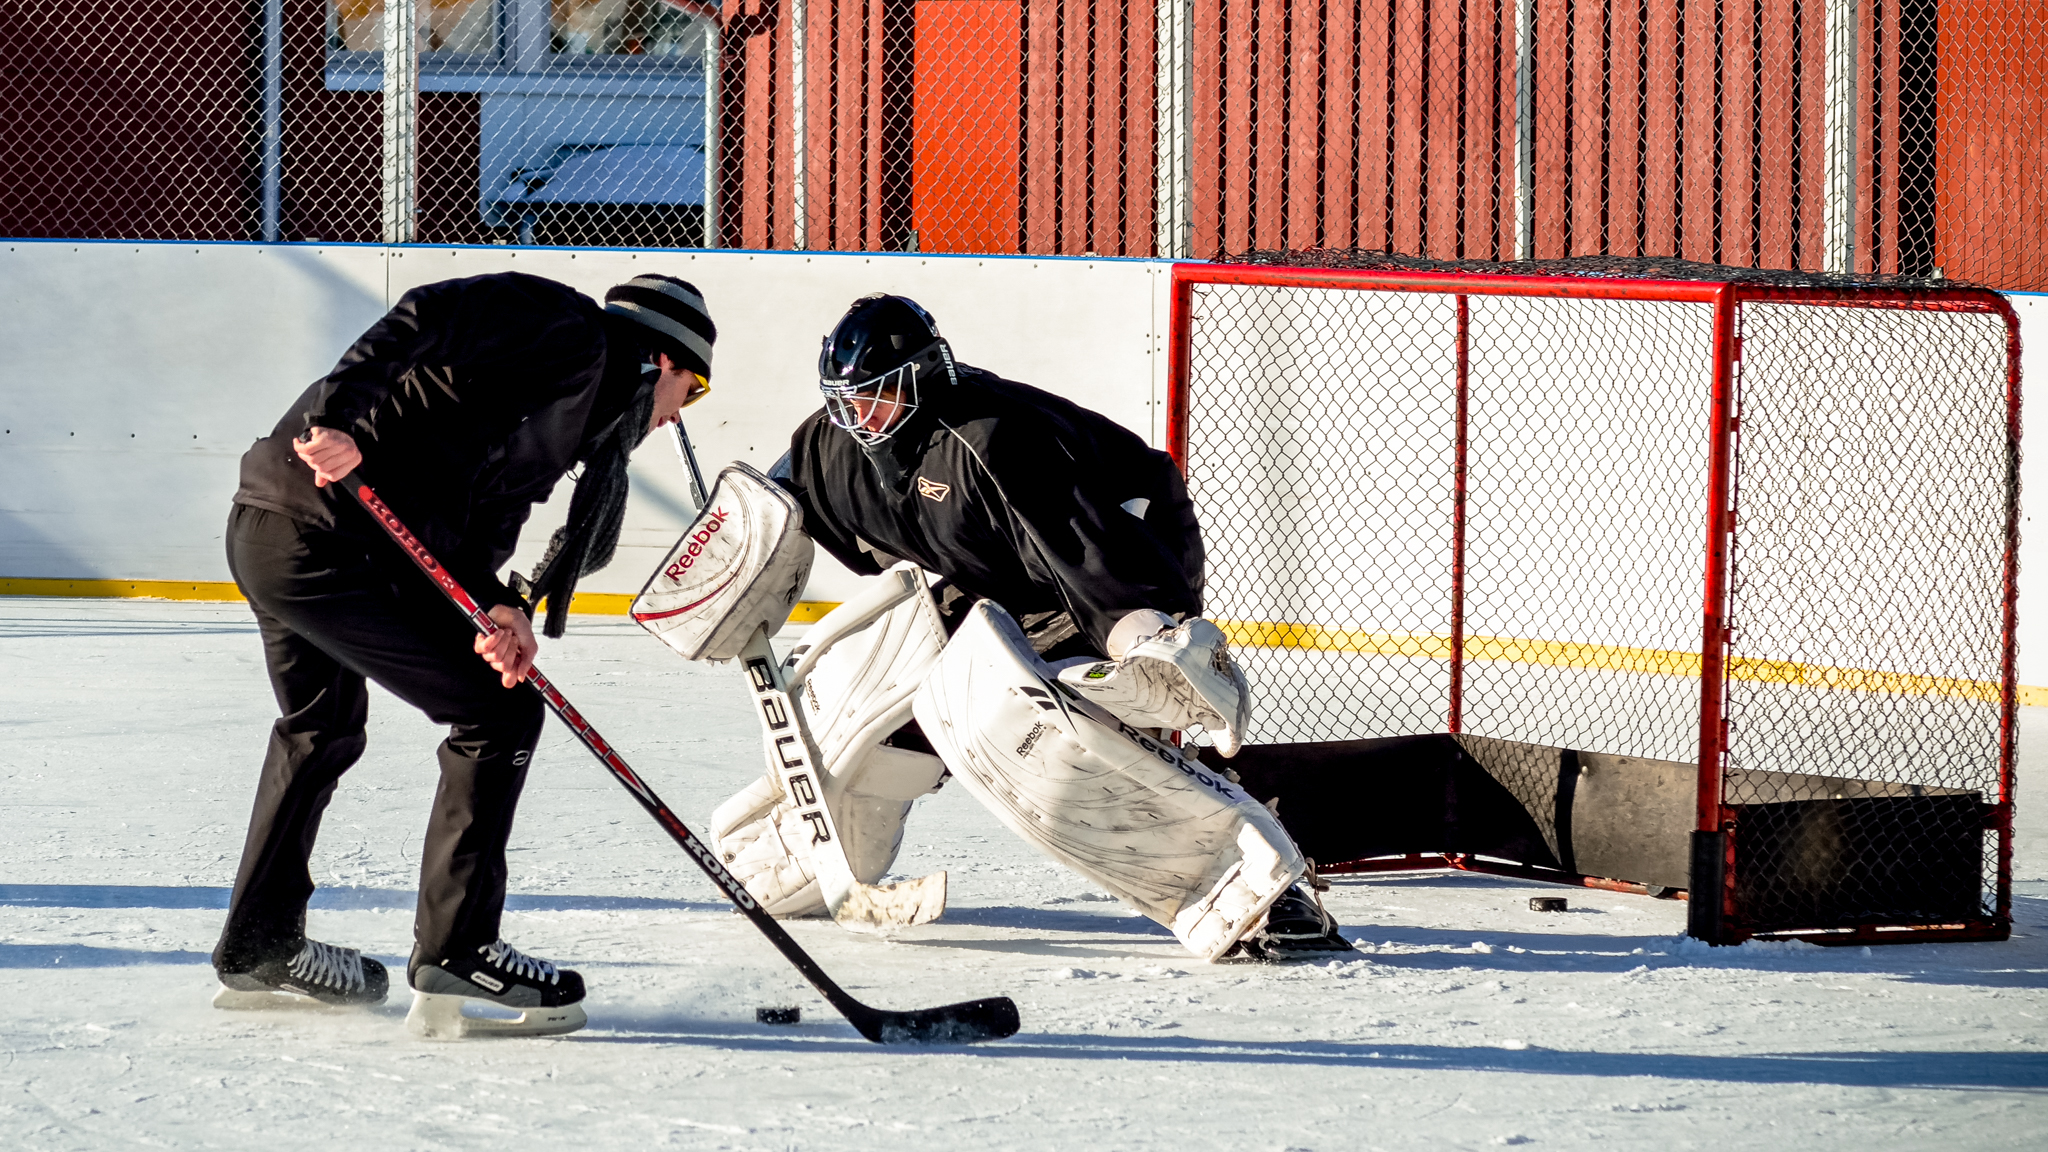 Outdoor ice hockey in Sweden